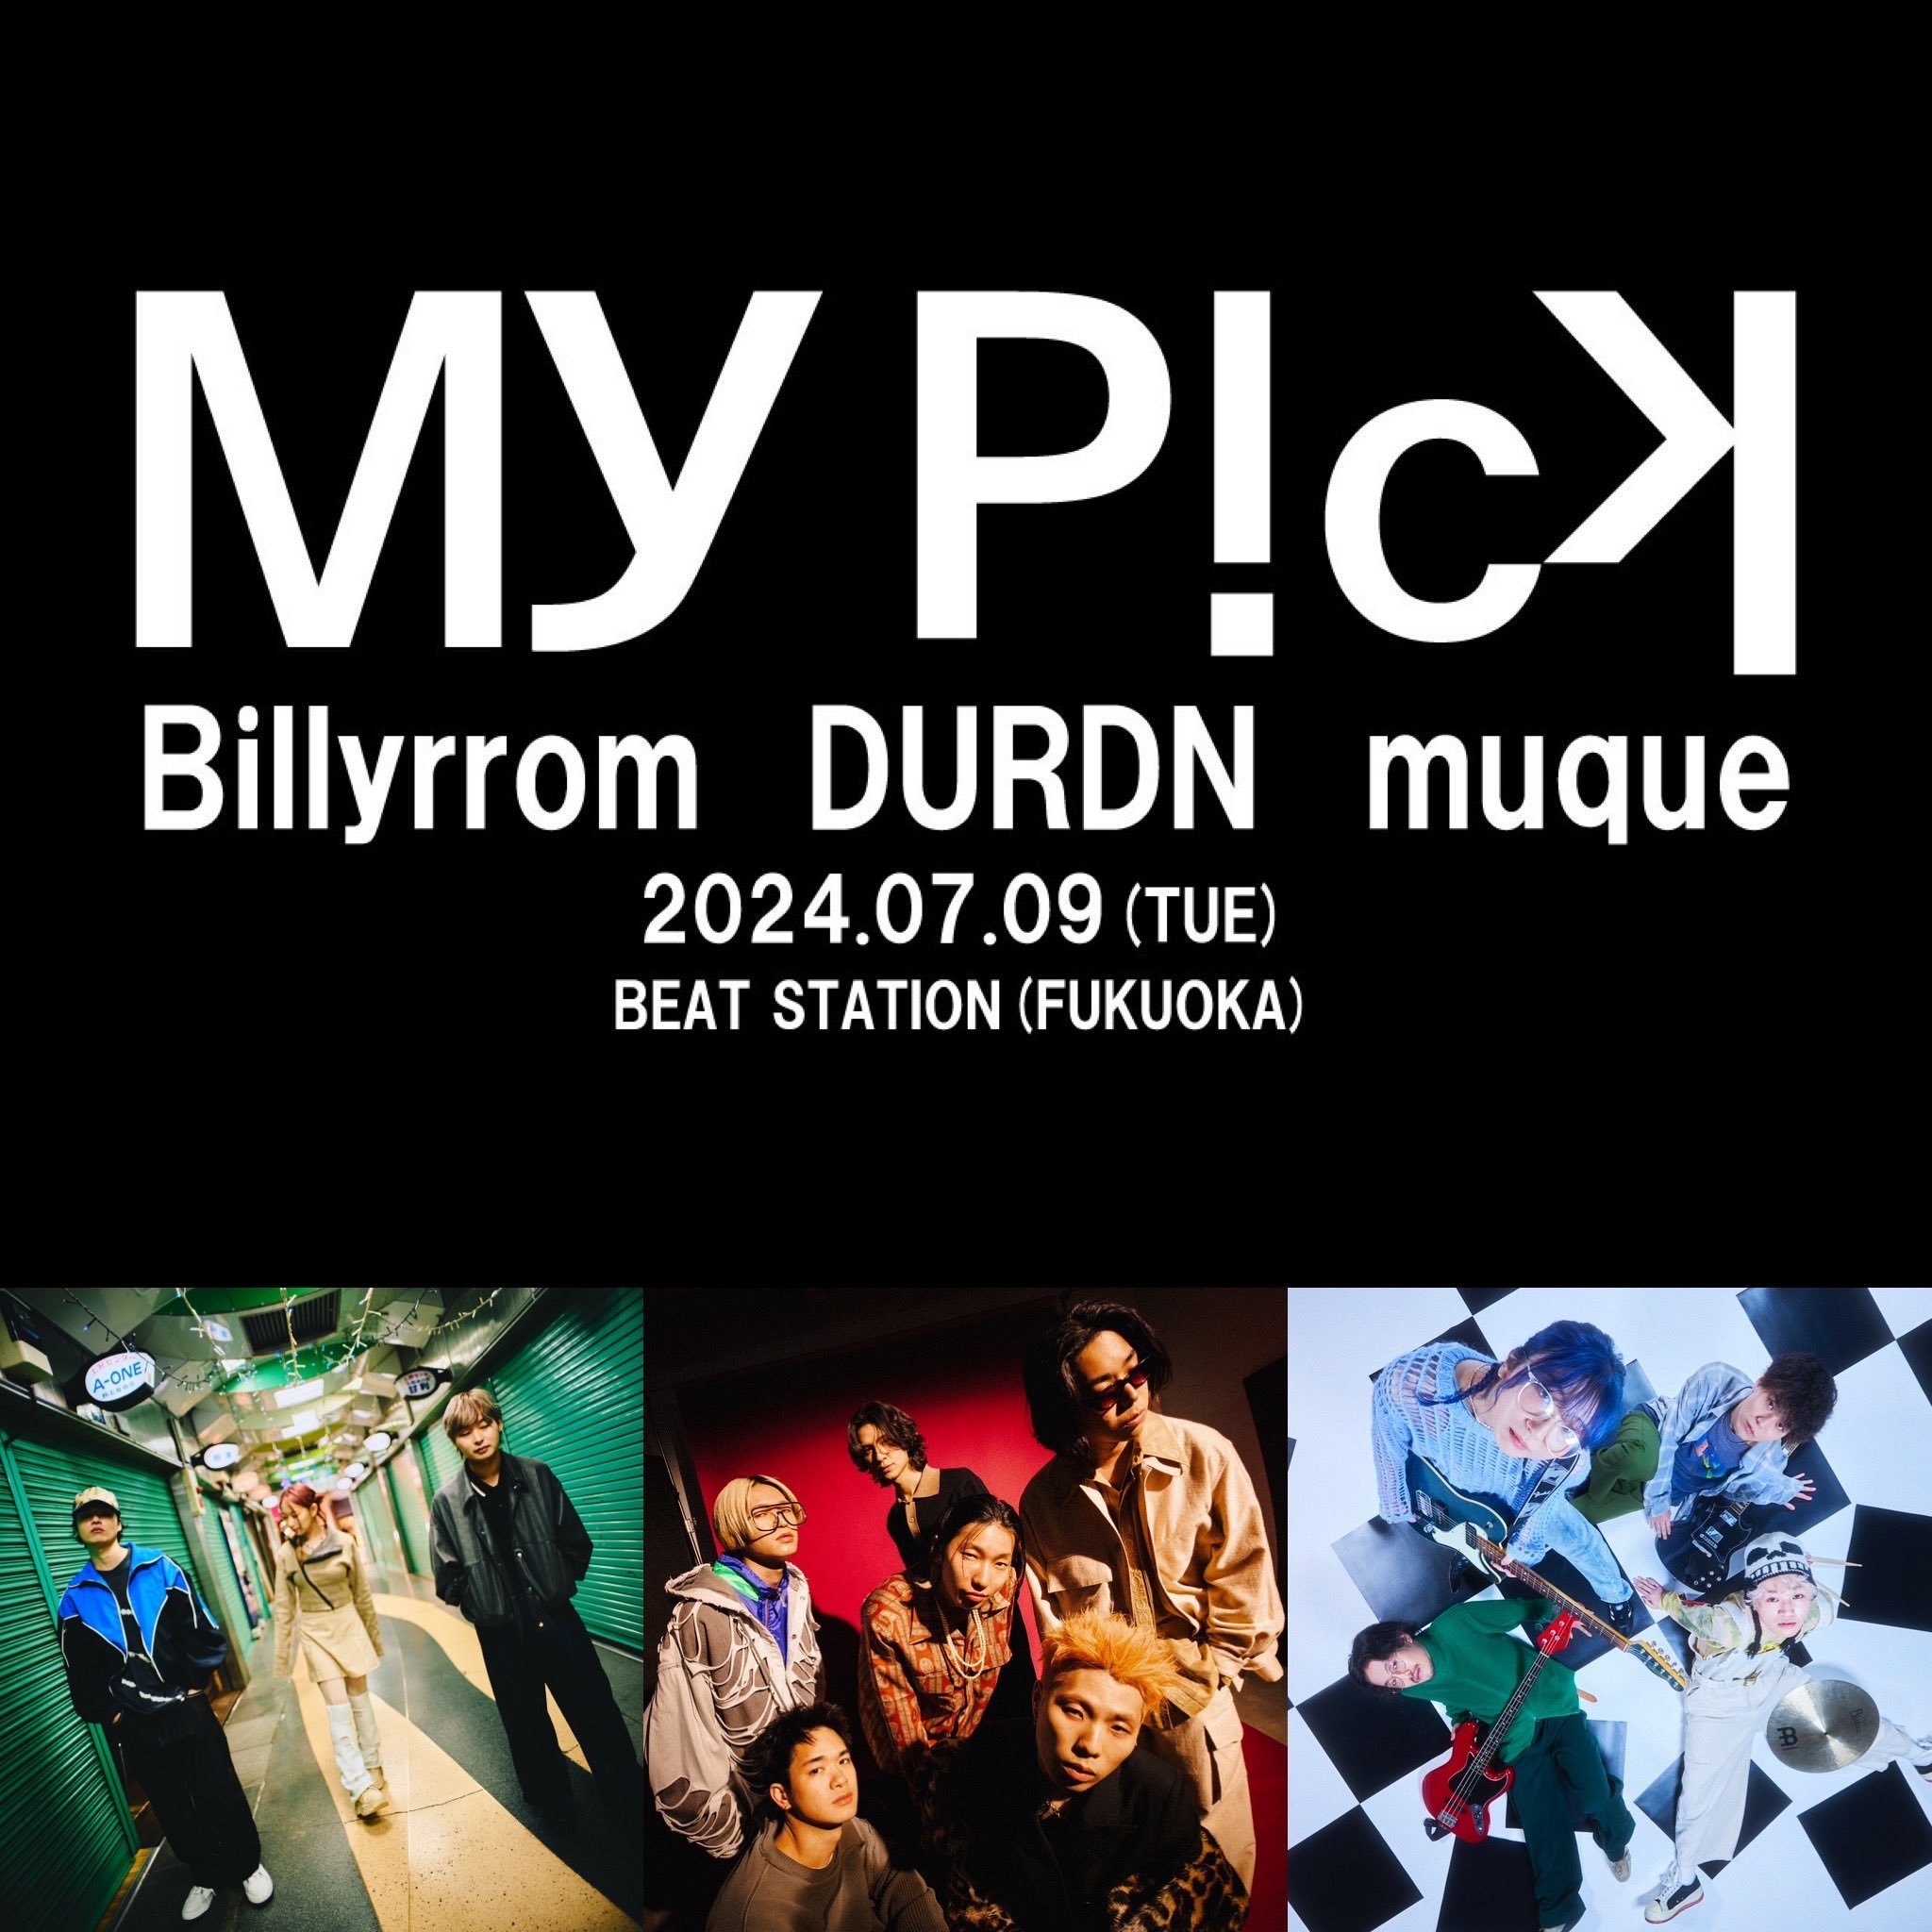 福岡に新ライブイベント『My Pick Vo.1』誕生、Billyrrom、DURDN、muqueが出演 | SPICE -  エンタメ特化型情報メディア スパイス